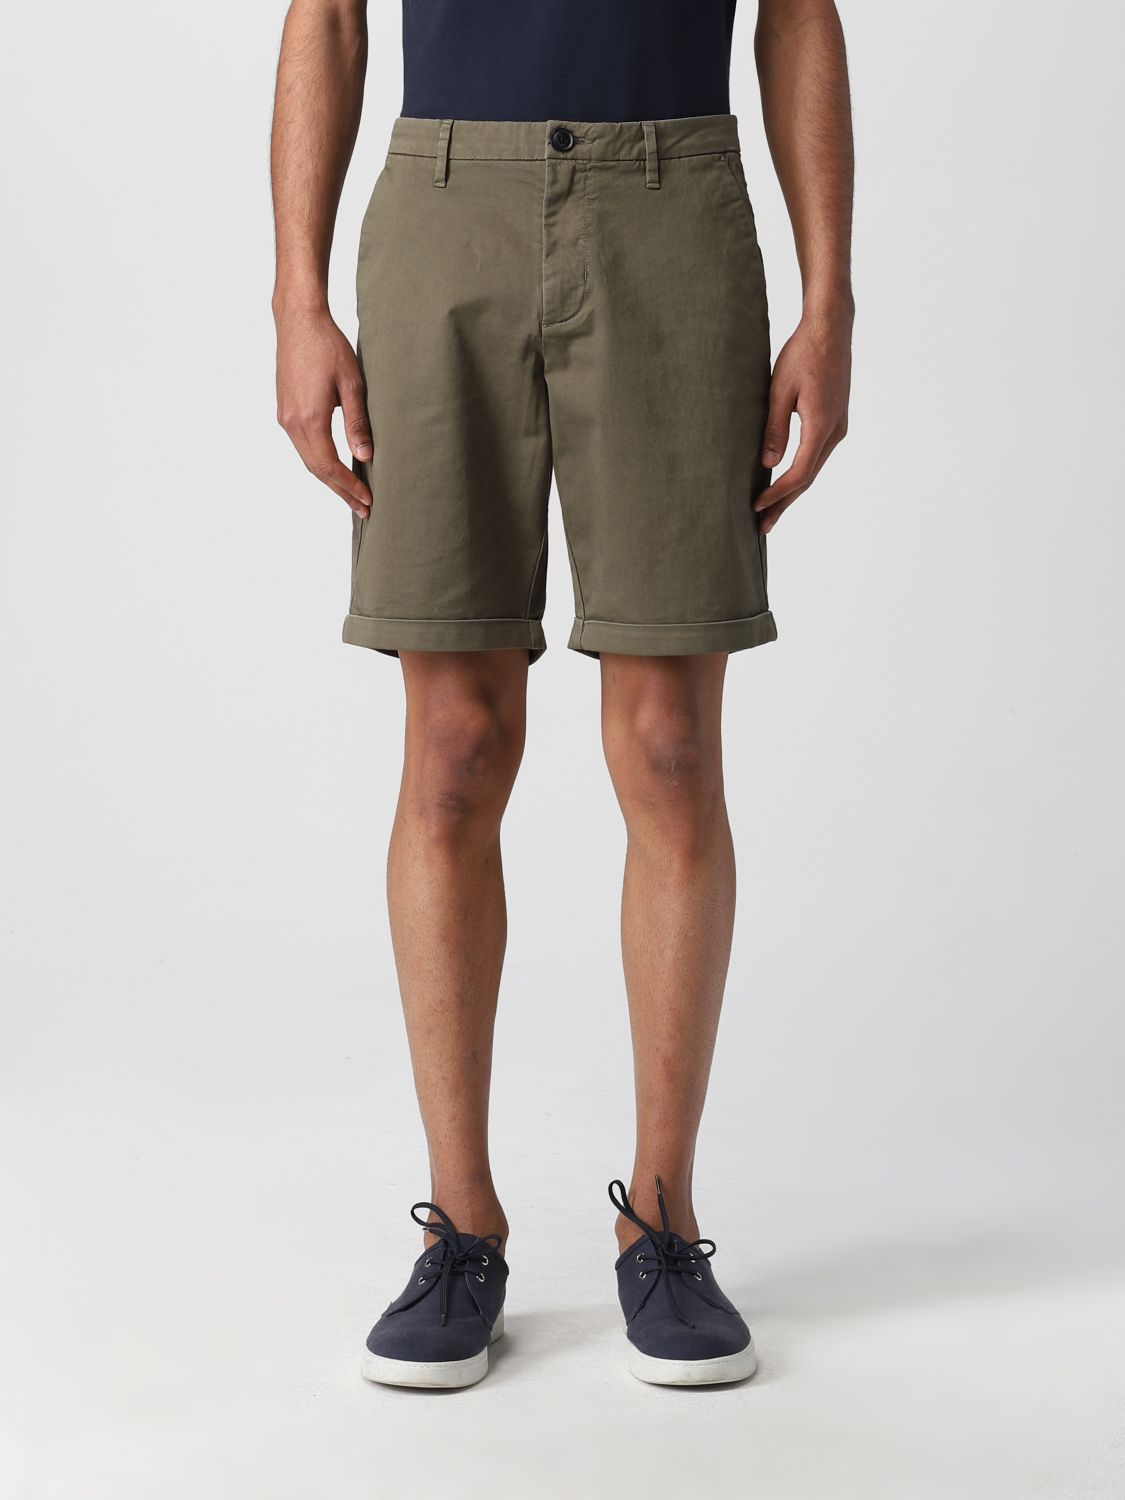 Pantalones cortos Sun 68: Pantalones cortos Sun 68 para hombre militar 1